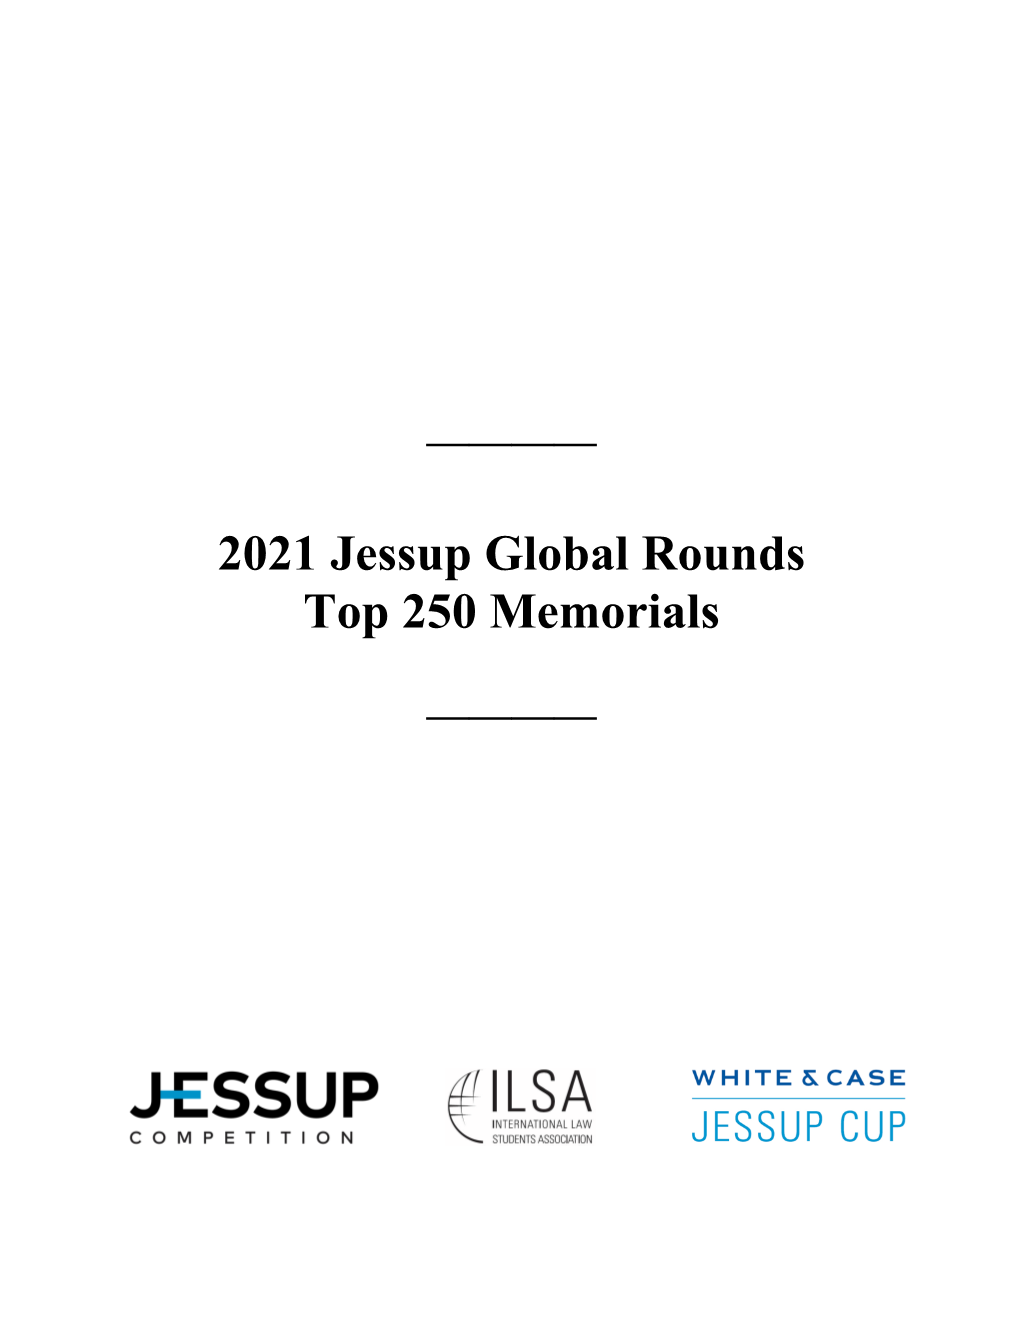 2021 Jessup Global Rounds Top 250 Memorials